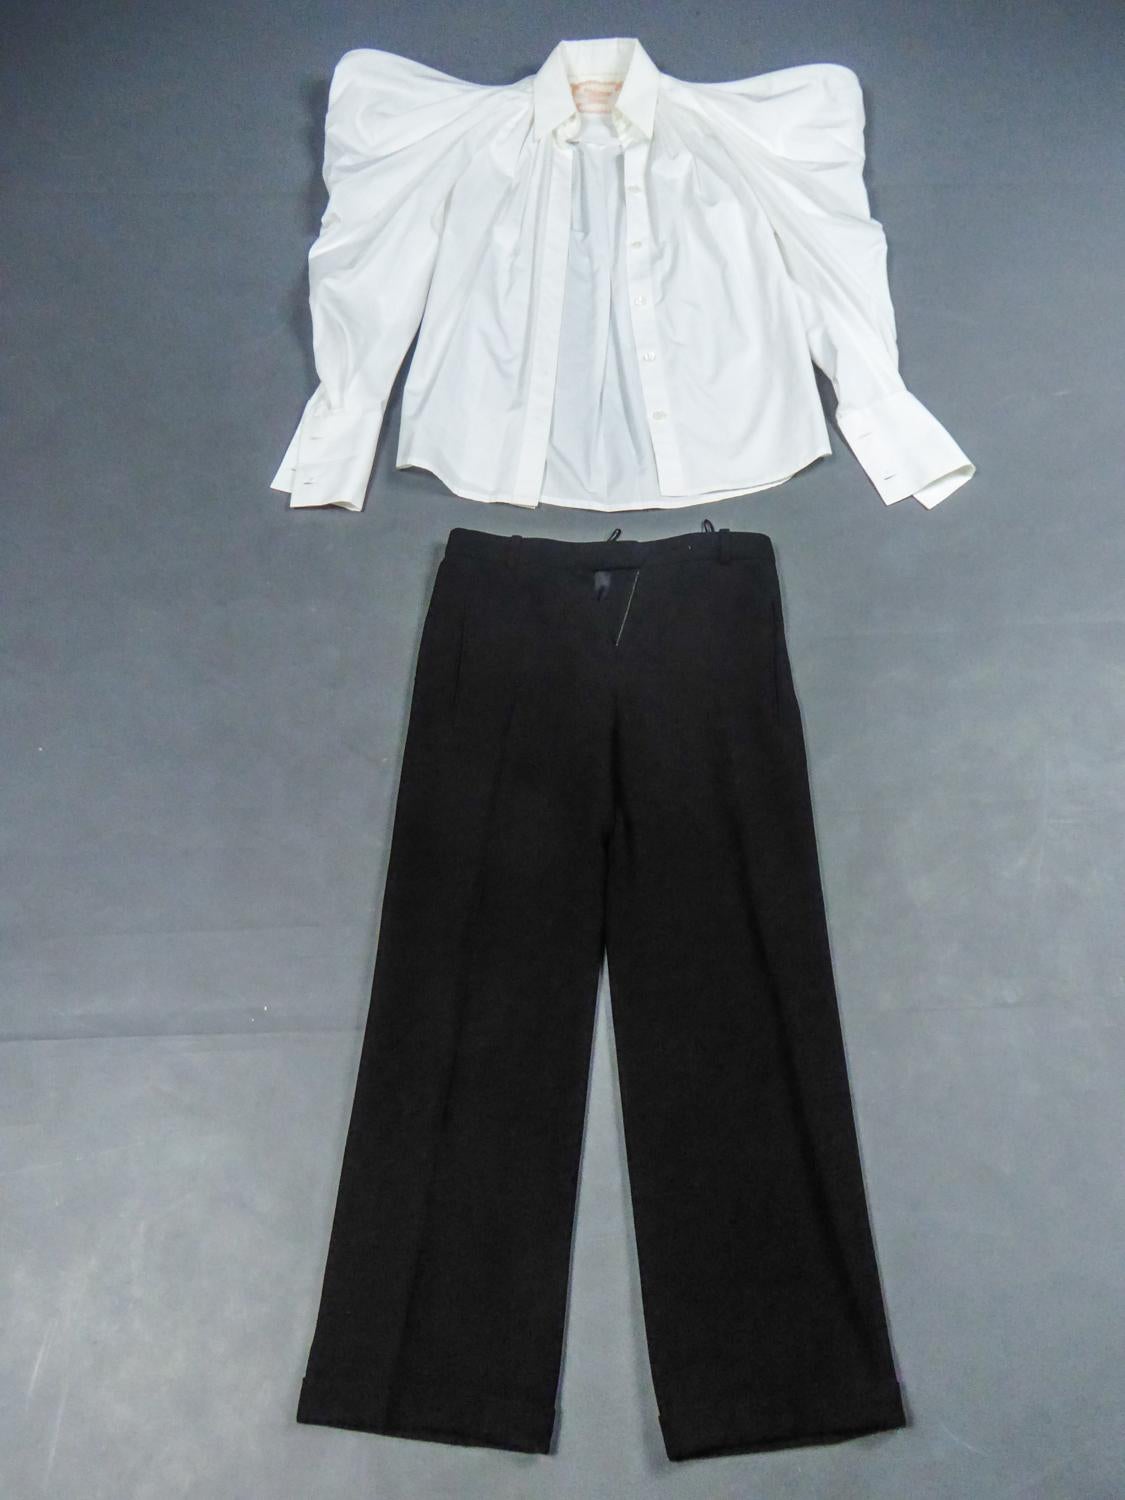 Spring Summer Collection 2014
Frankreich

Haute Couture Set bestehend aus einer Bluse in weißer Baumwollpopeline mit Puffärmeln und einer Hose in schwarzem Krepp aus der Frühjahr-Sommer-Kollektion 2014 Passage n ° 9 Jean Paul Gaultier. Bluse mit